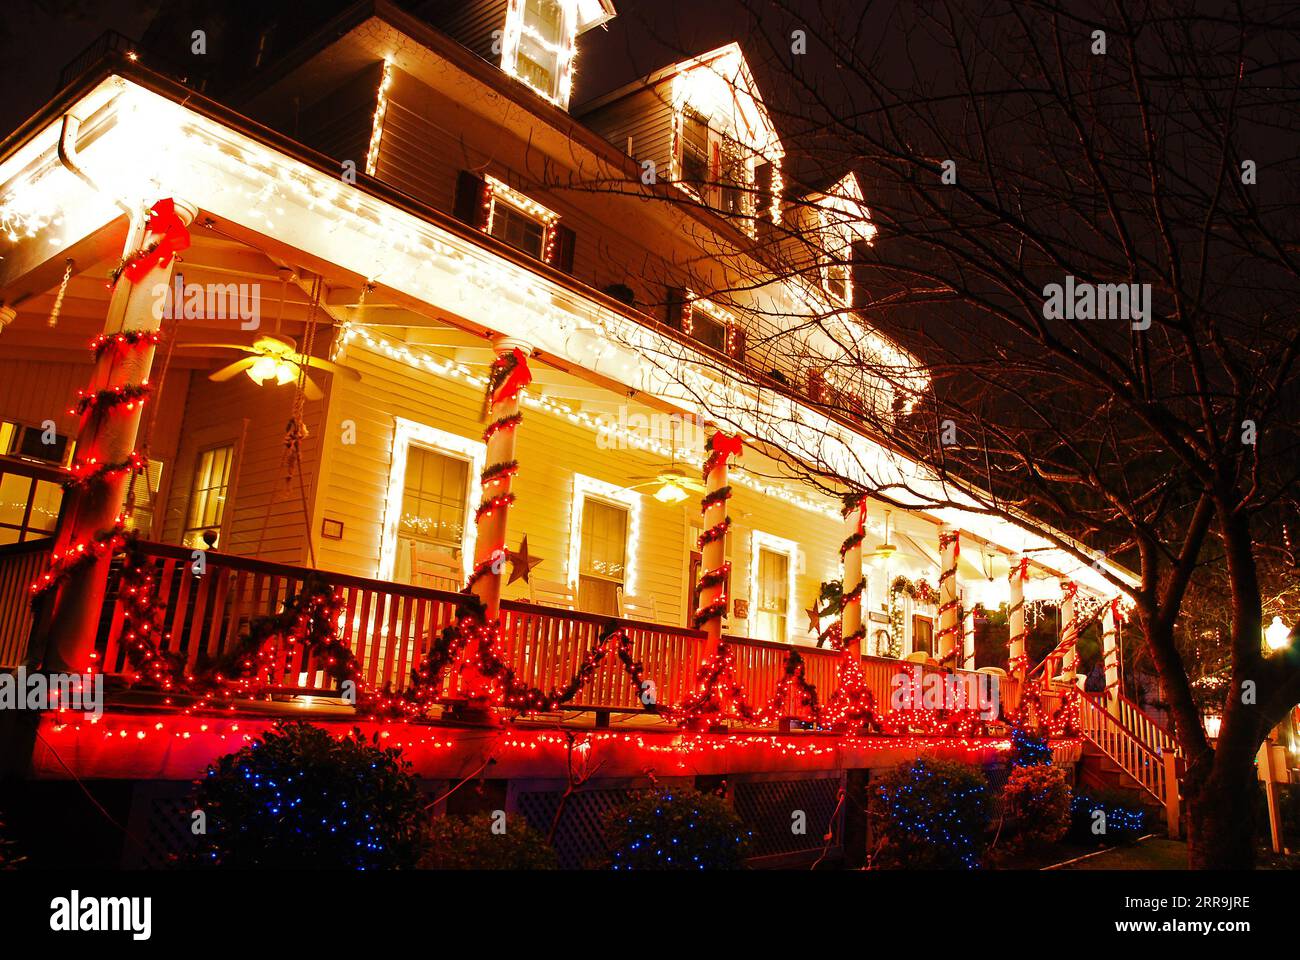 Ein viktorianisches Haus in Cape May, New Jersey, ist zu Weihnachten mit Lichtern, Kränzen und stechpalmen dekoriert Stockfoto